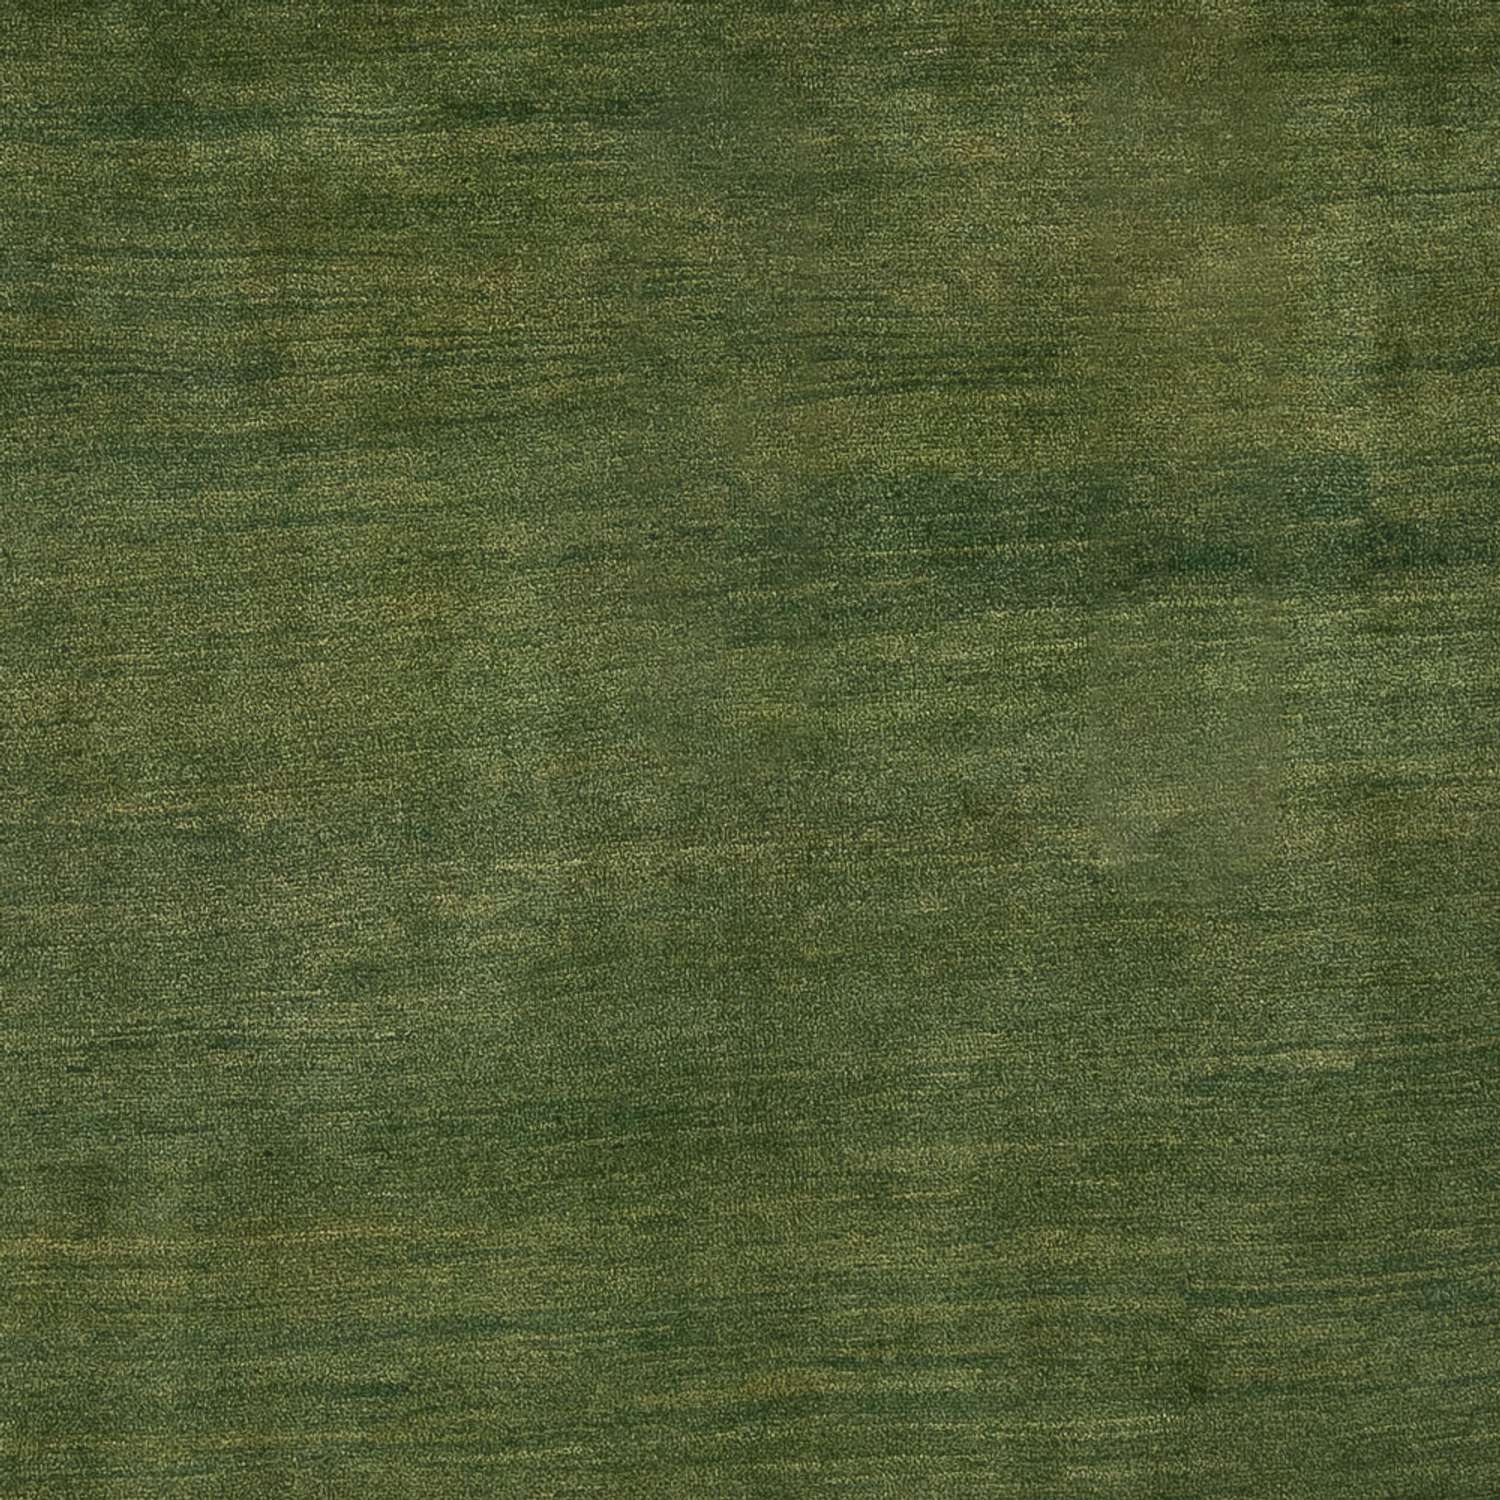 Gabbeh Rug - Perser - 293 x 207 cm - mint green